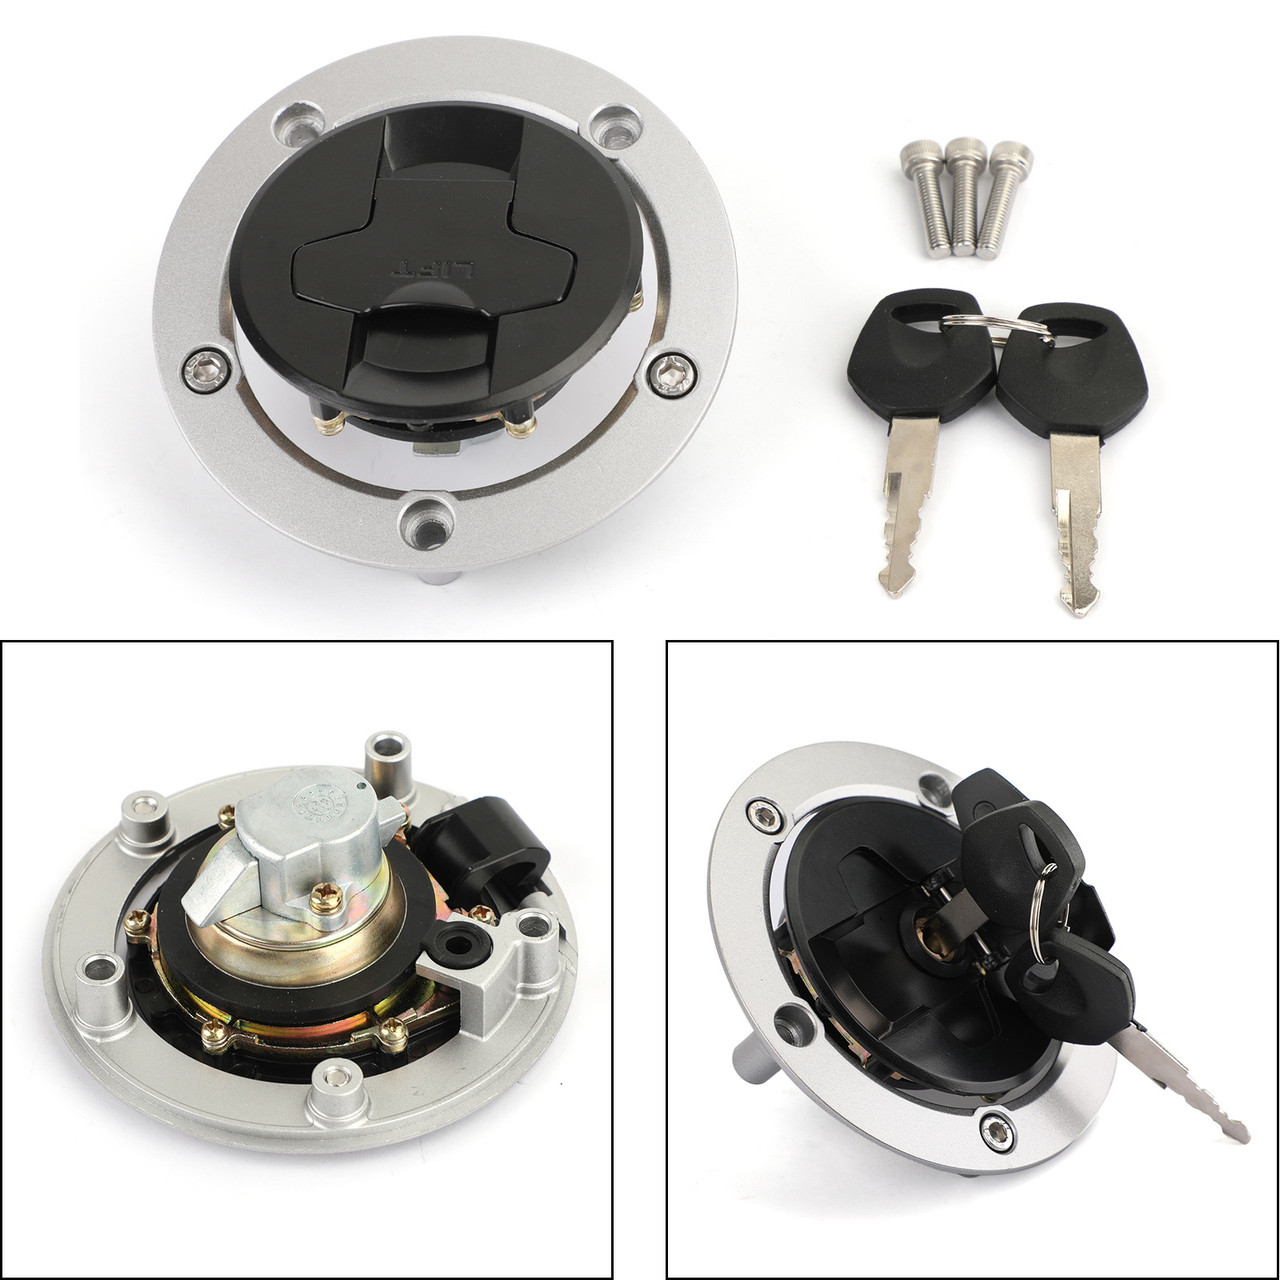 Ignition Switch Lock & Keys Kit Fit for Kawasaki ZX1000 ZX636 Ninja 11-18 ER650 ER6N EX650 Ninja 650 12-16